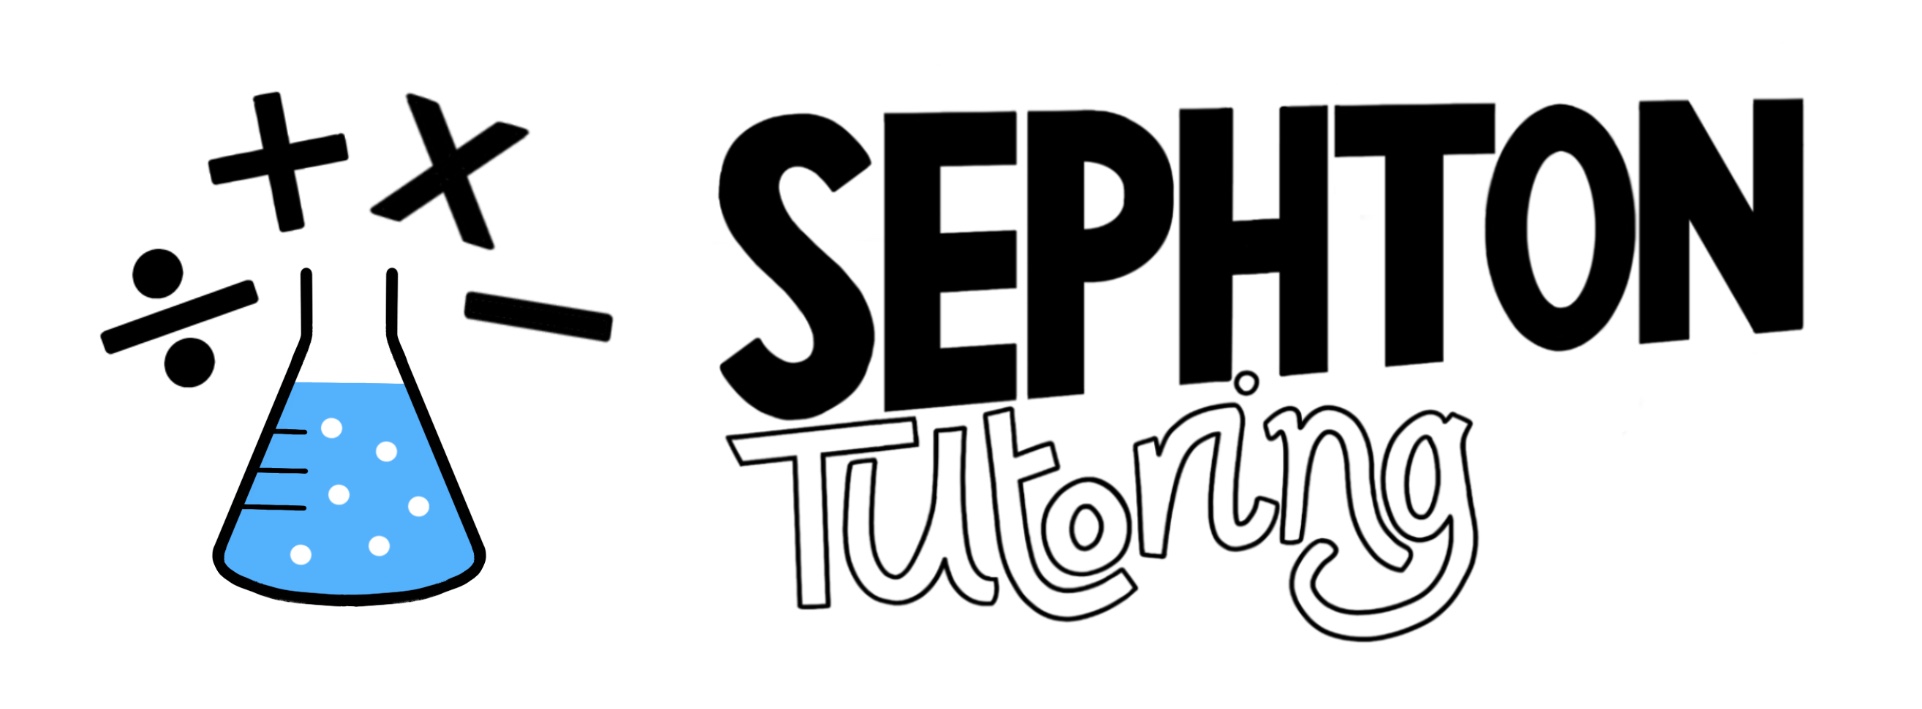 Sephton Tutoring Logo